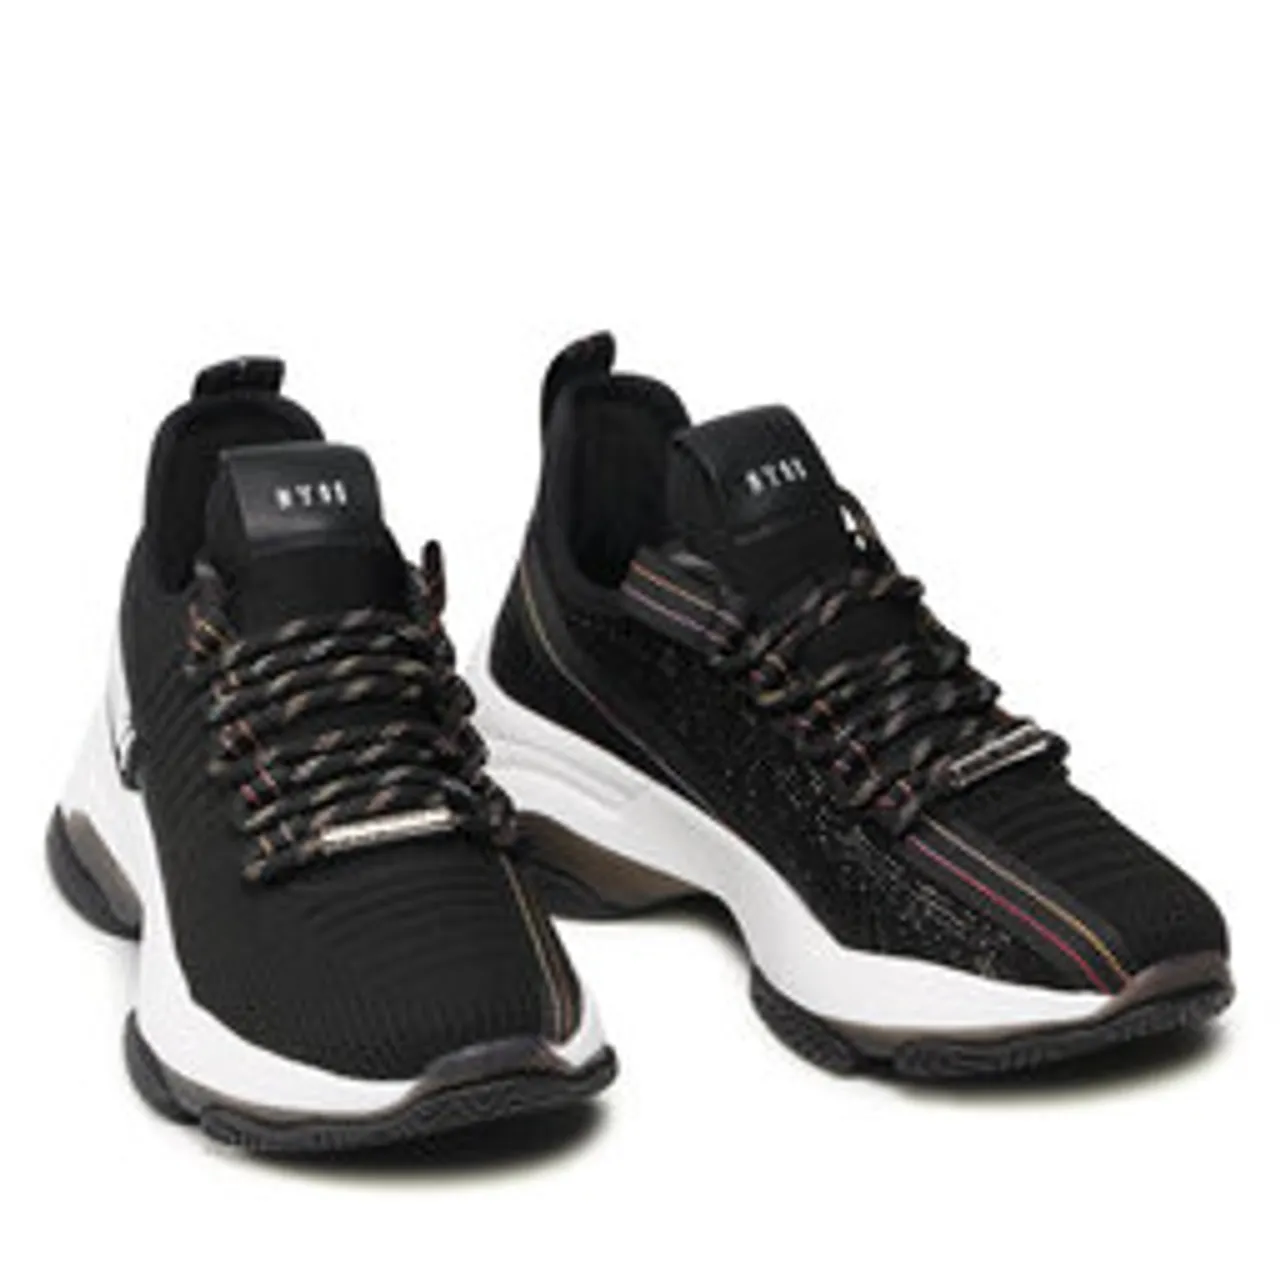 Sneakers Steve Madden Maxilla-R SM11001603-04004-184 Black/Black